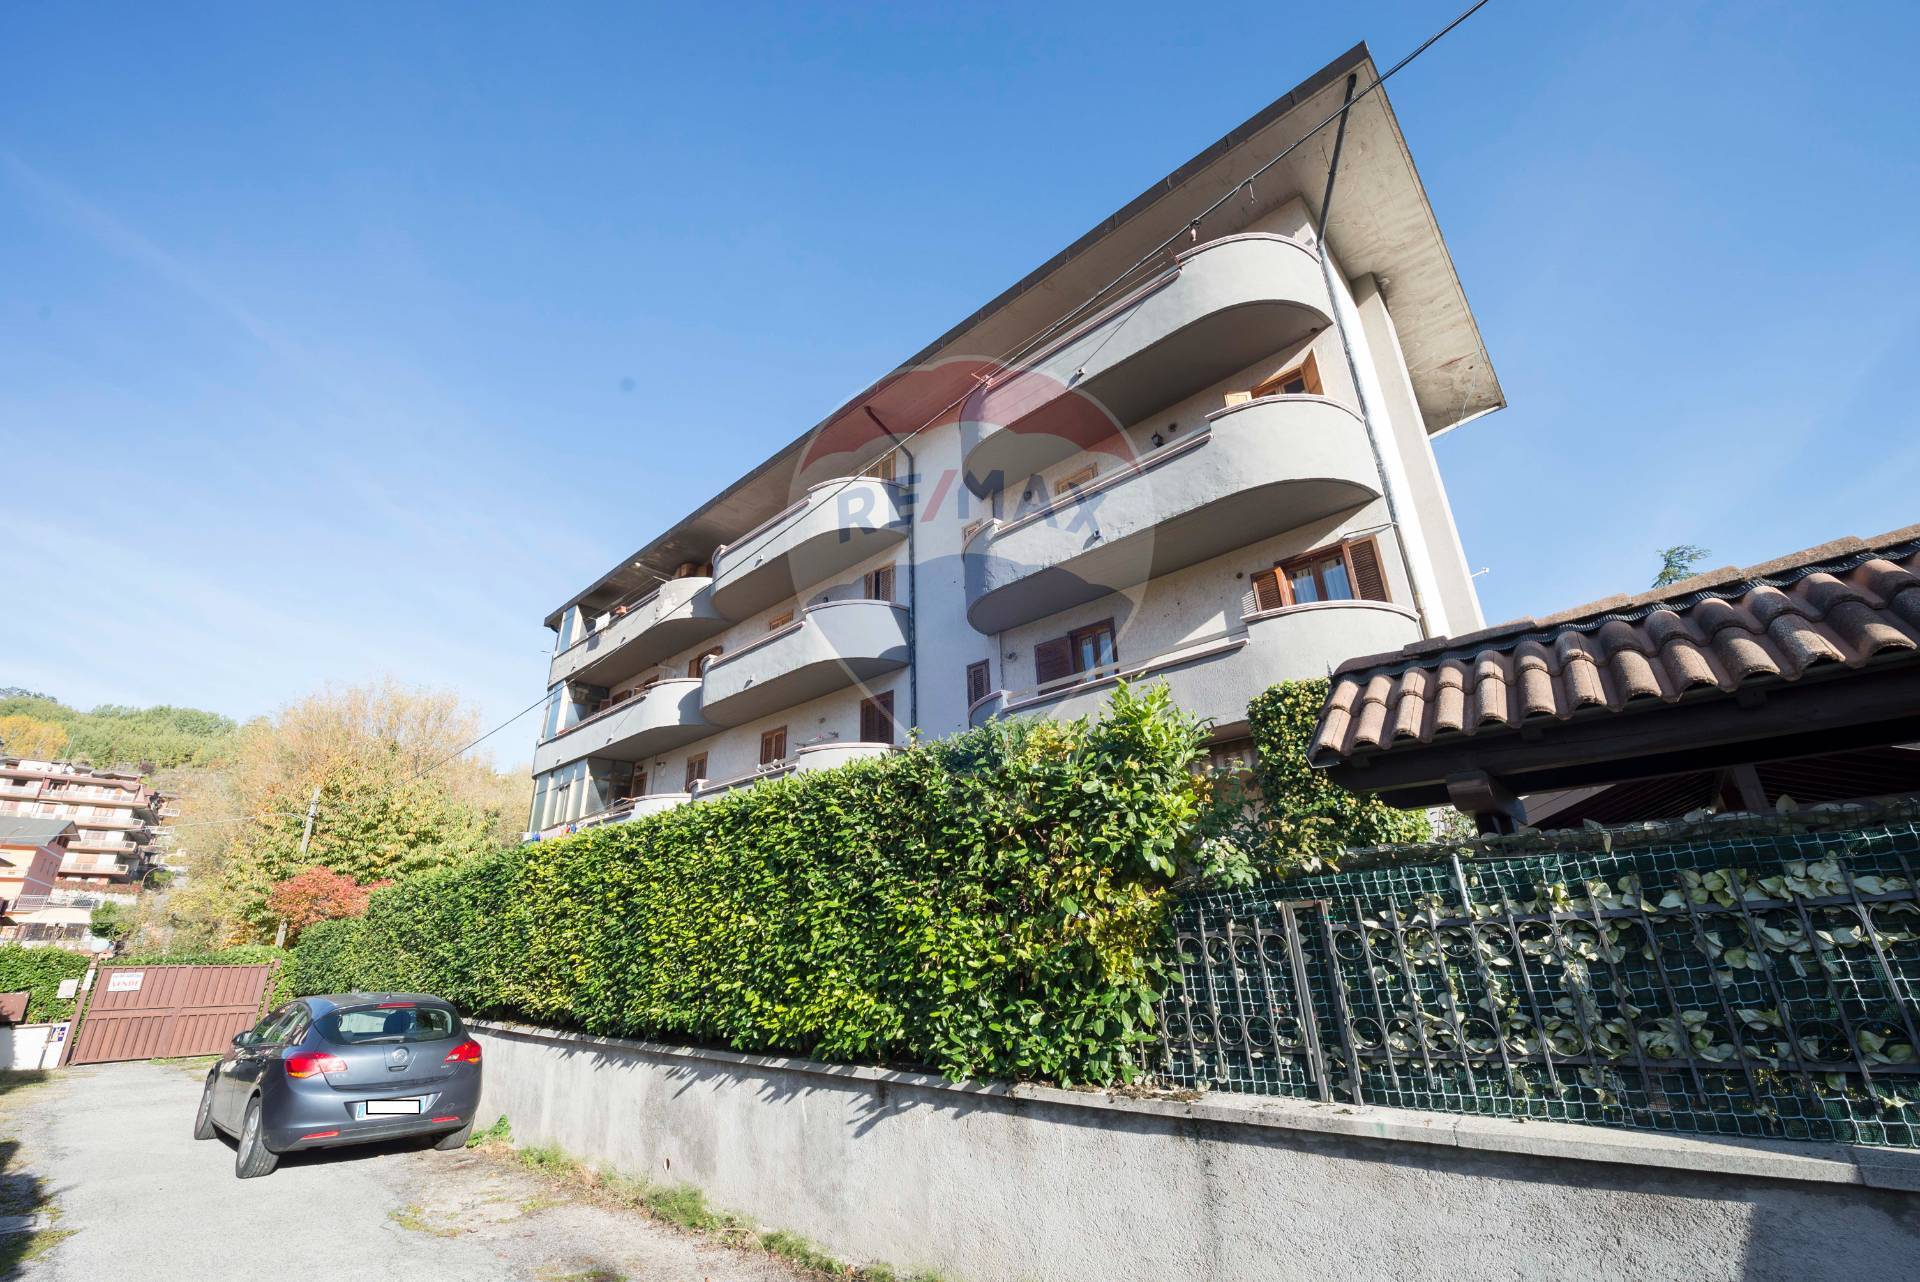 Appartamento in vendita a Tagliacozzo, 3 locali, prezzo € 90.000 | CambioCasa.it